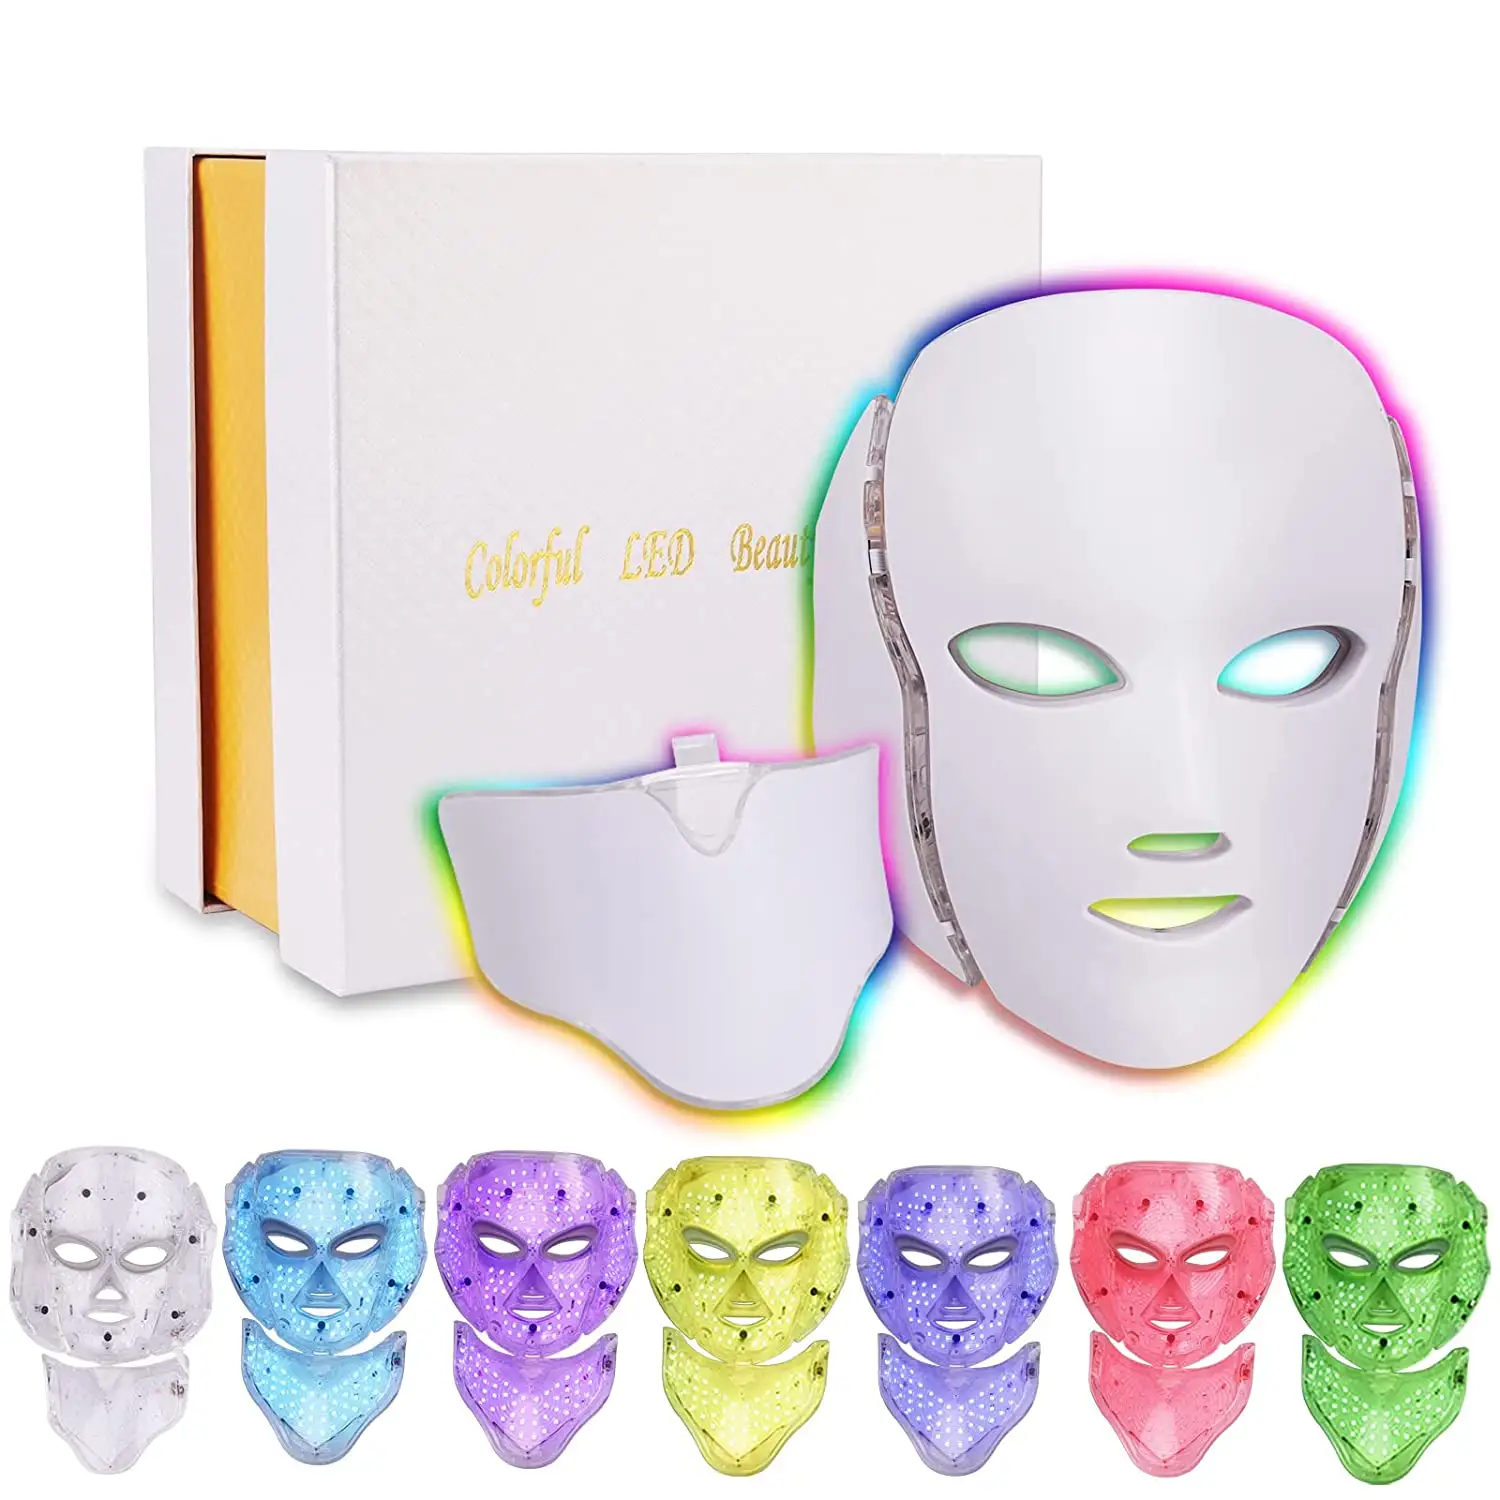 Máscara facial de led para terapia de rejuvenescimento, terapia de rejuvenescimento da pele com 7 cores, máscara de fóton, anti idade, envelhecimento